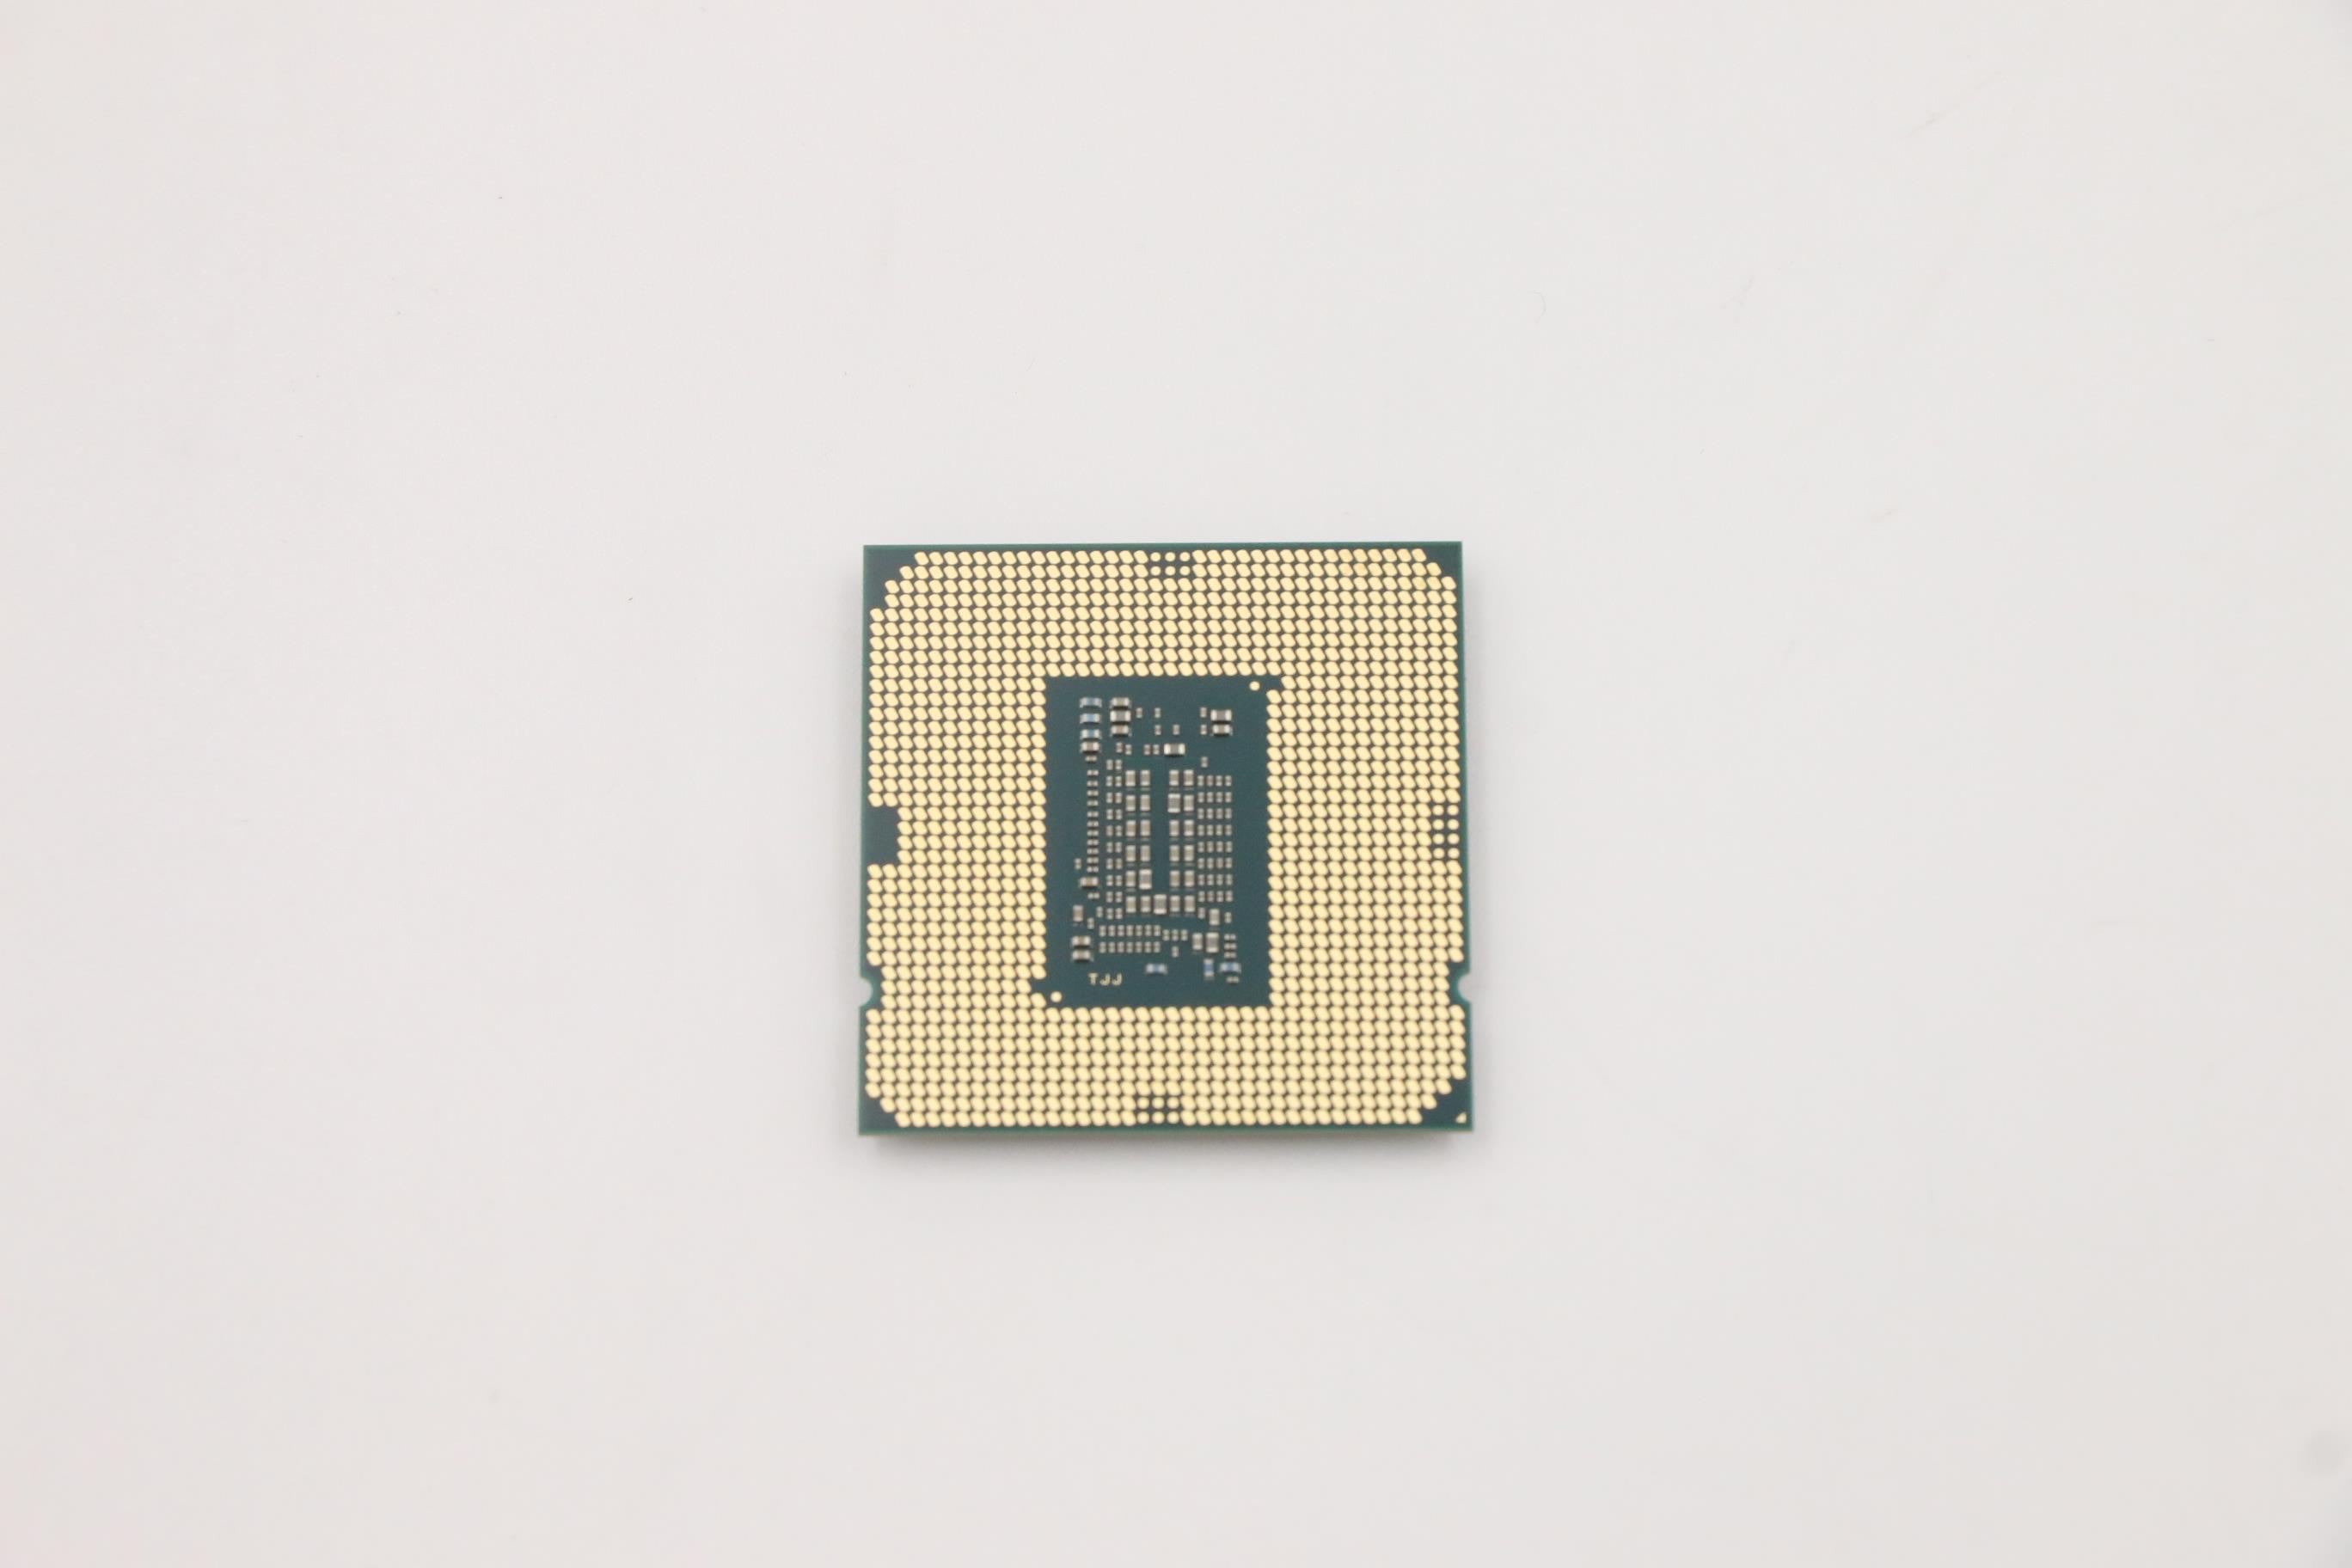 Lenovo Part  Original Lenovo FRU Intel i3-10305 3.8GHz/4C/8M 65W DDR4 2666